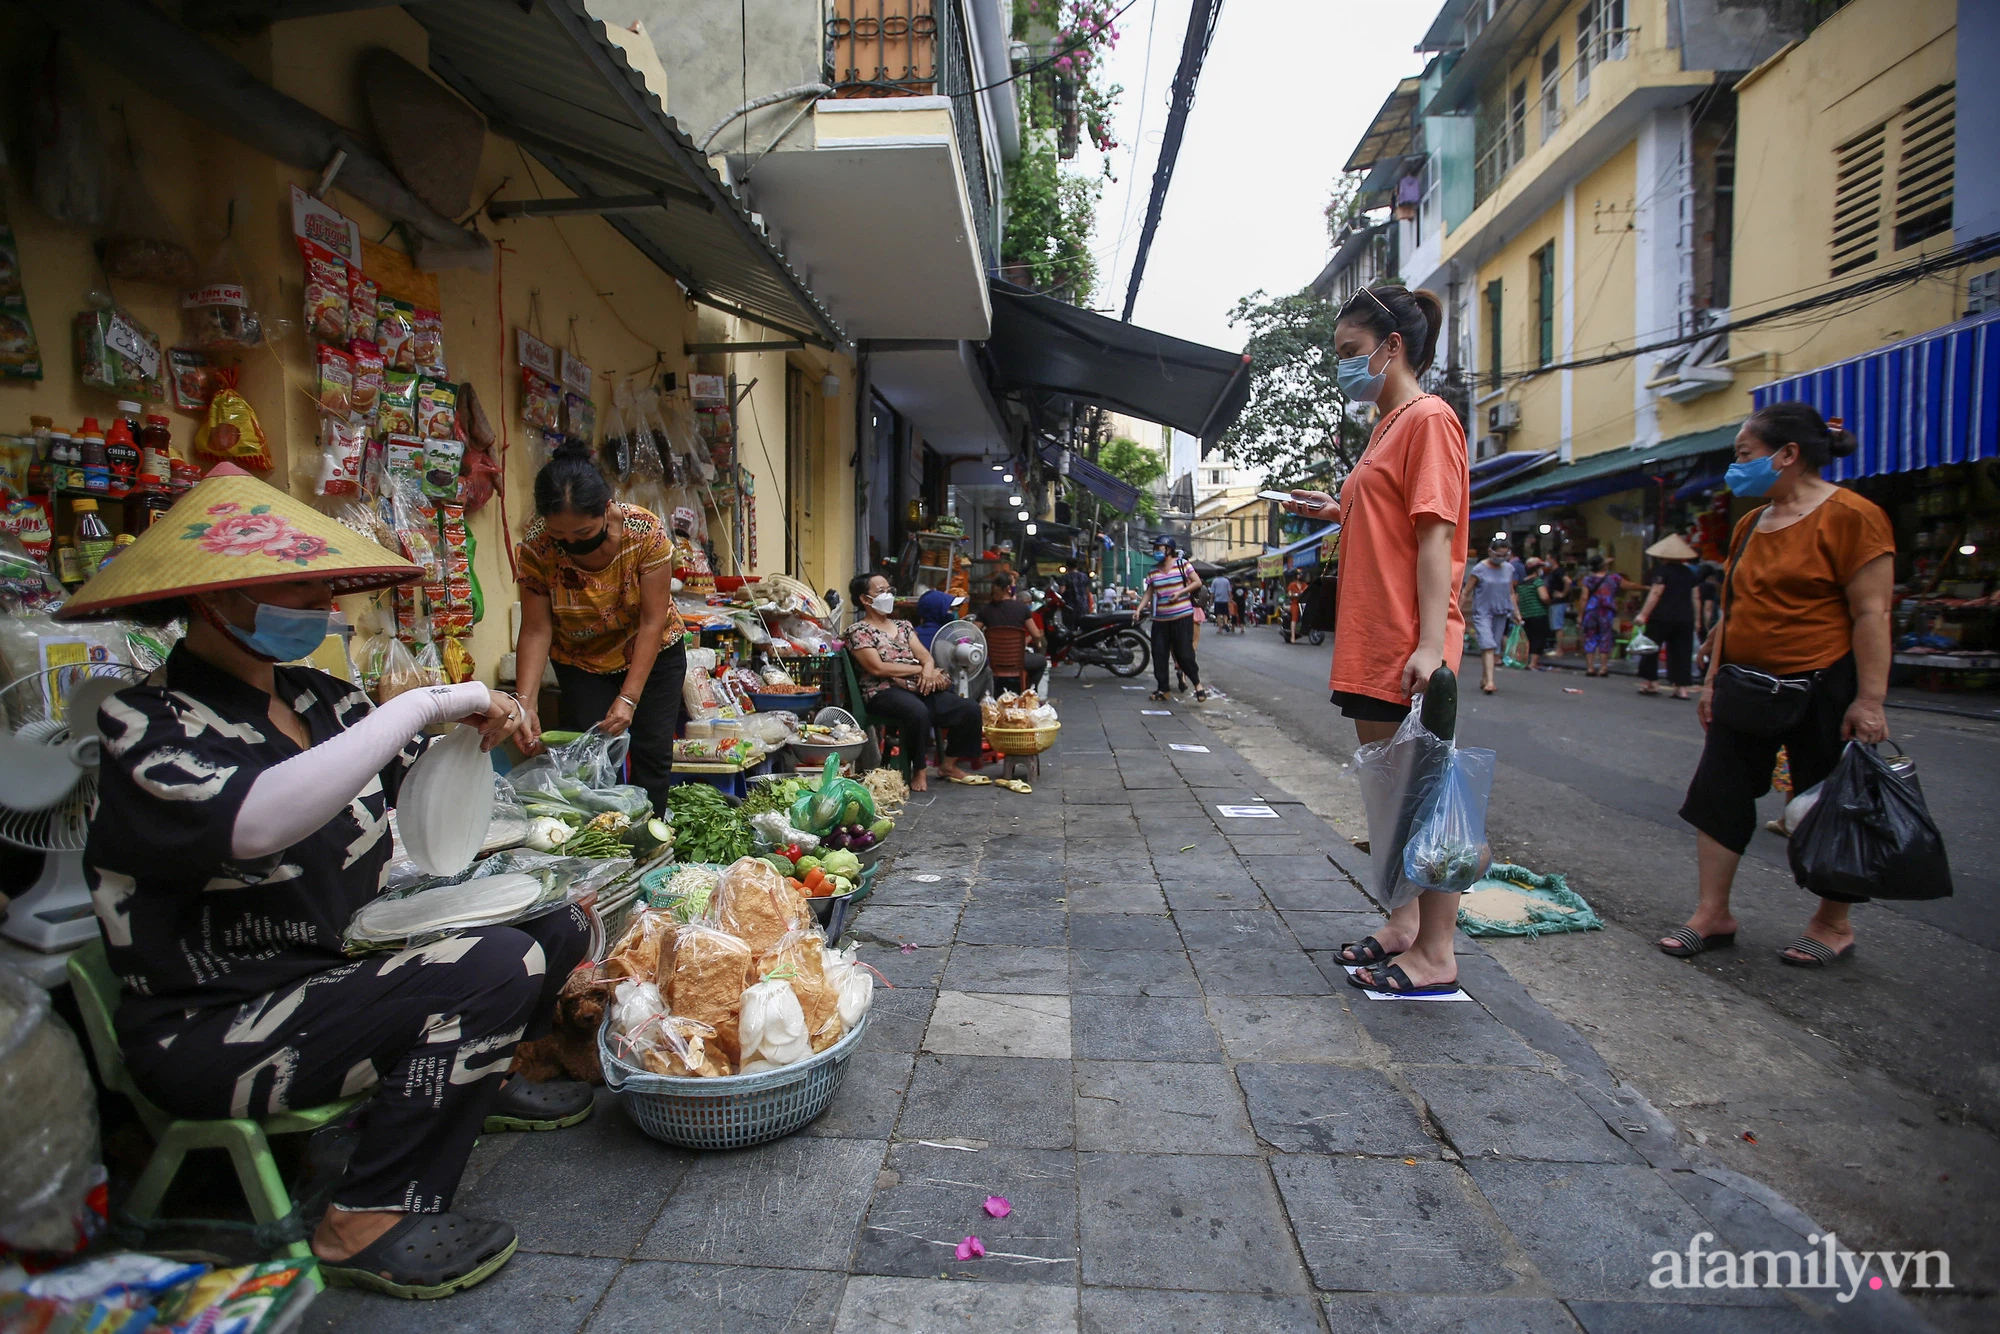 Ngày đầu giãn cách theo Chỉ thị 16, khu chợ ở Hà Nội kẻ vạch cách nhau 2 m, người mua kẻ bán tuy xa mặt nhưng không cách lòng - Ảnh 9.